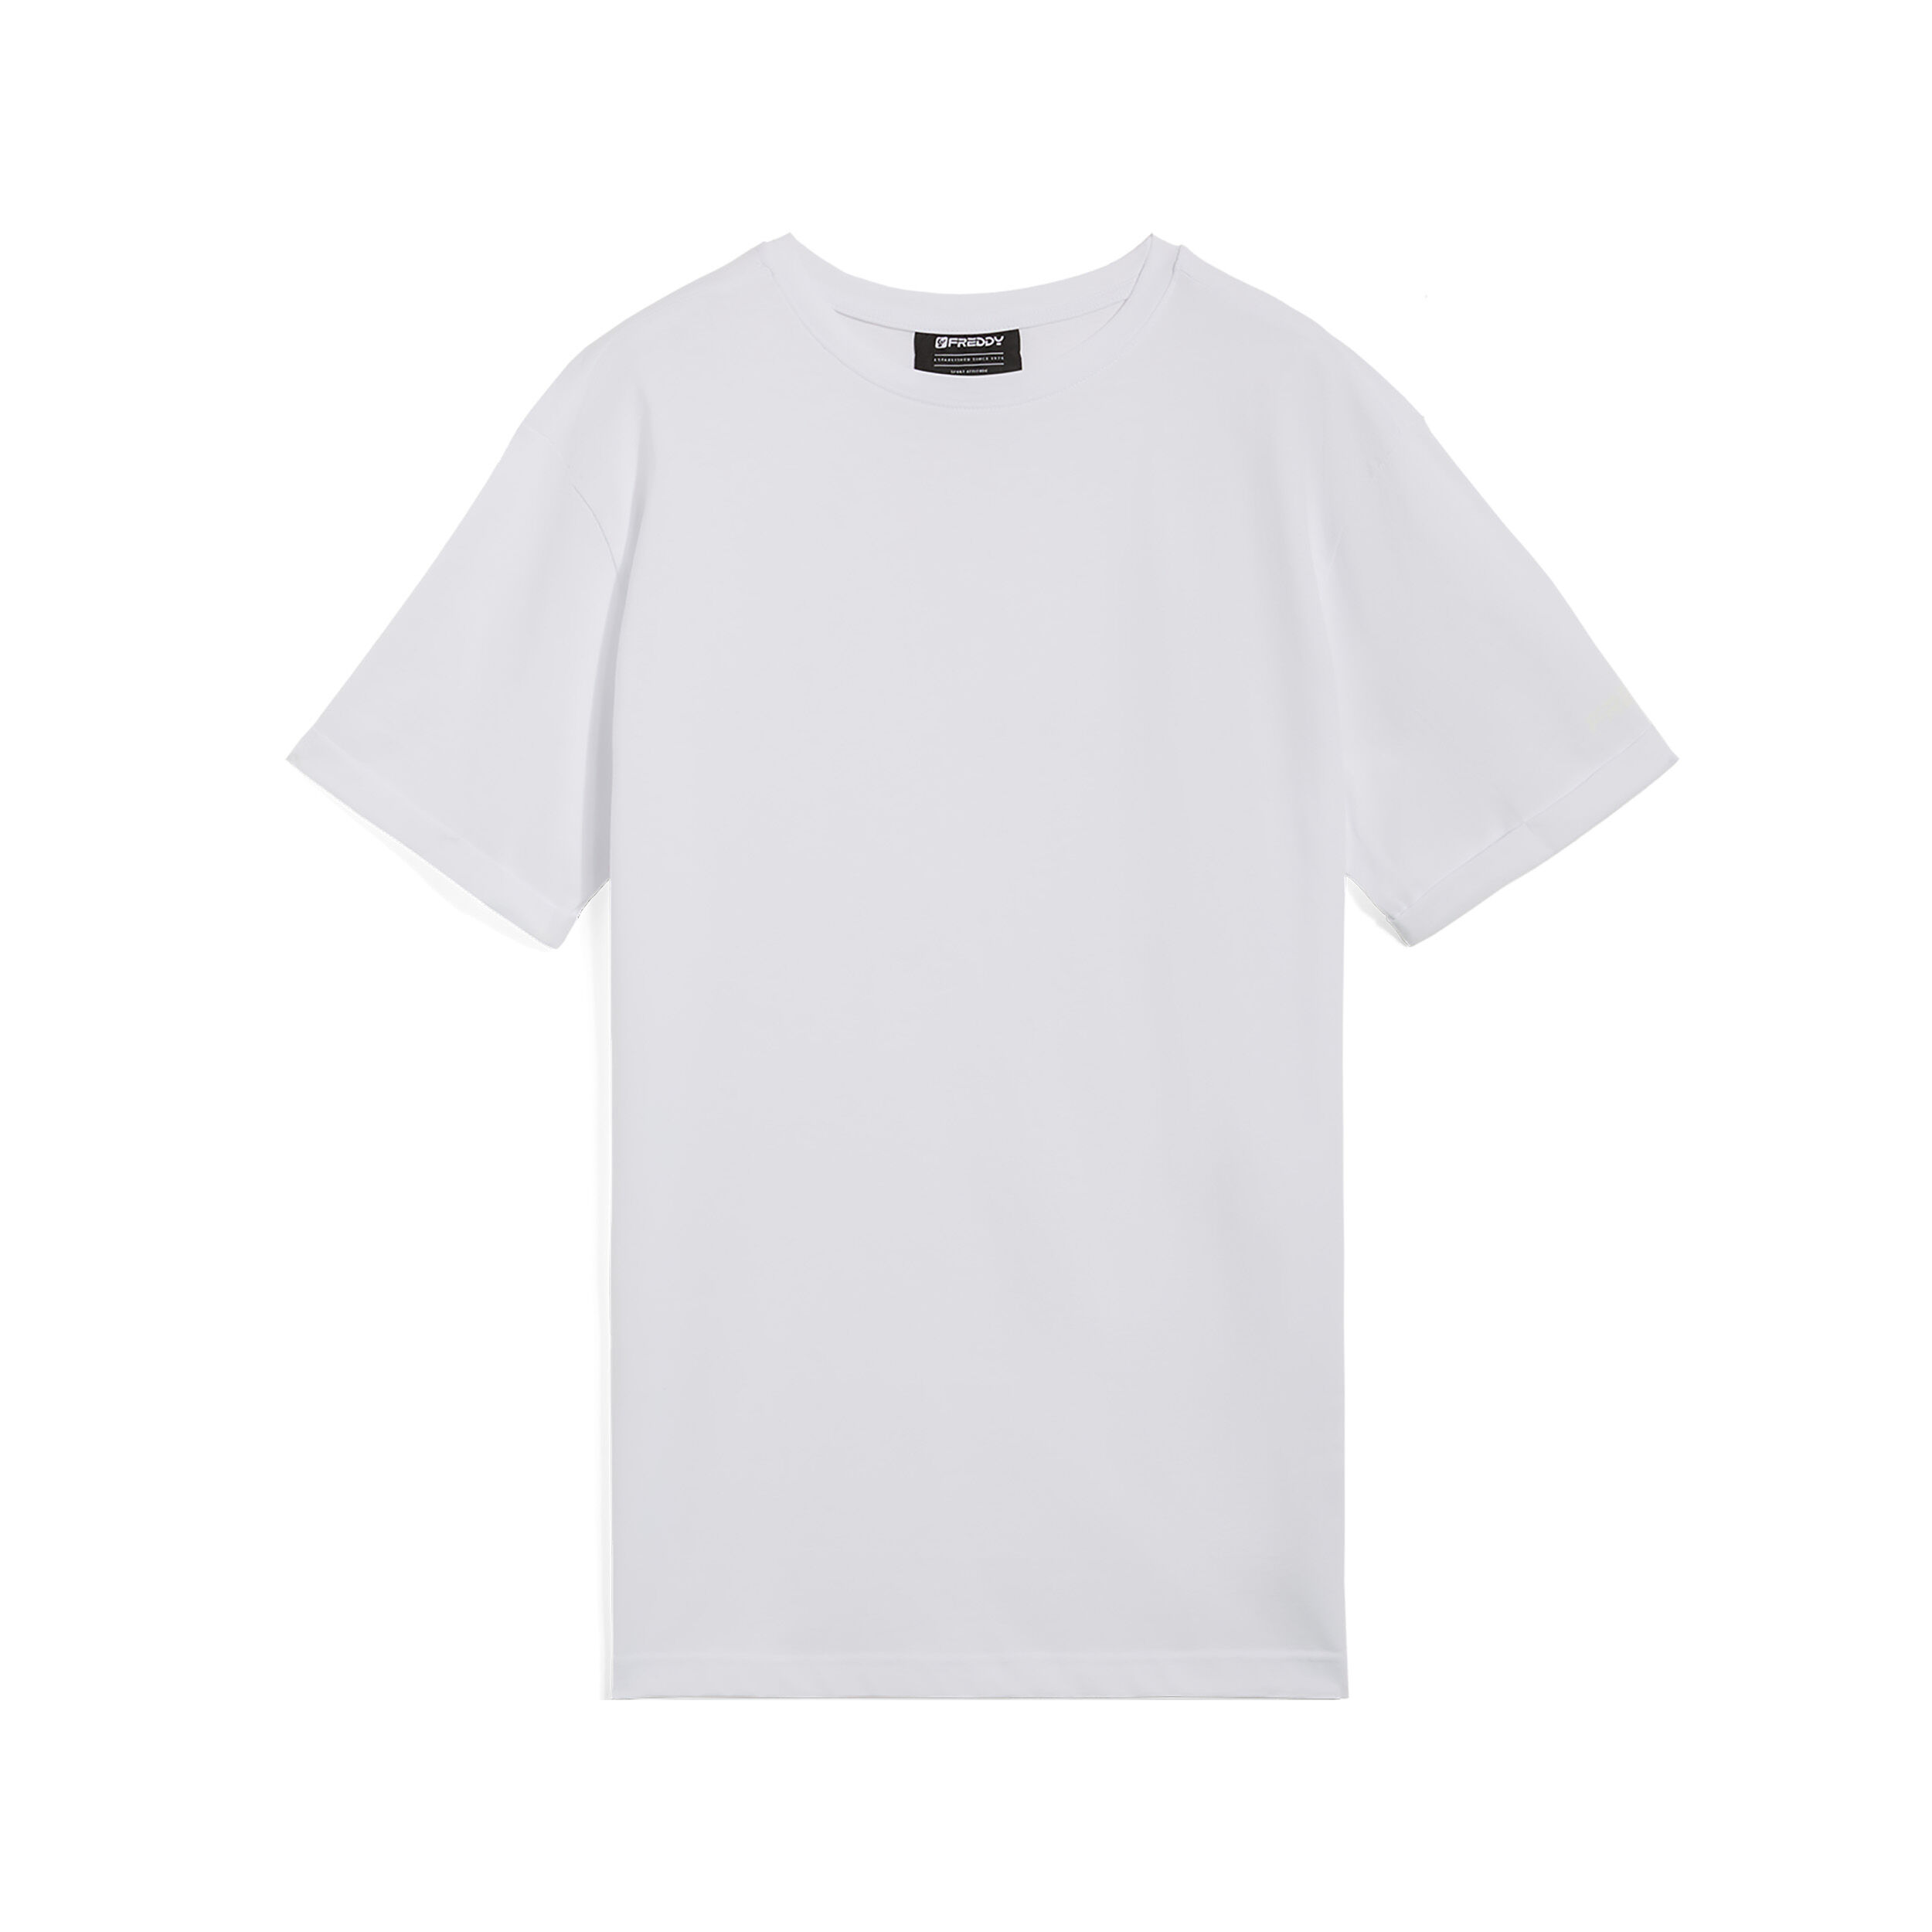 Freddy T-shirt da uomo design essenziale in cotone 100% Bianco Uomo Large